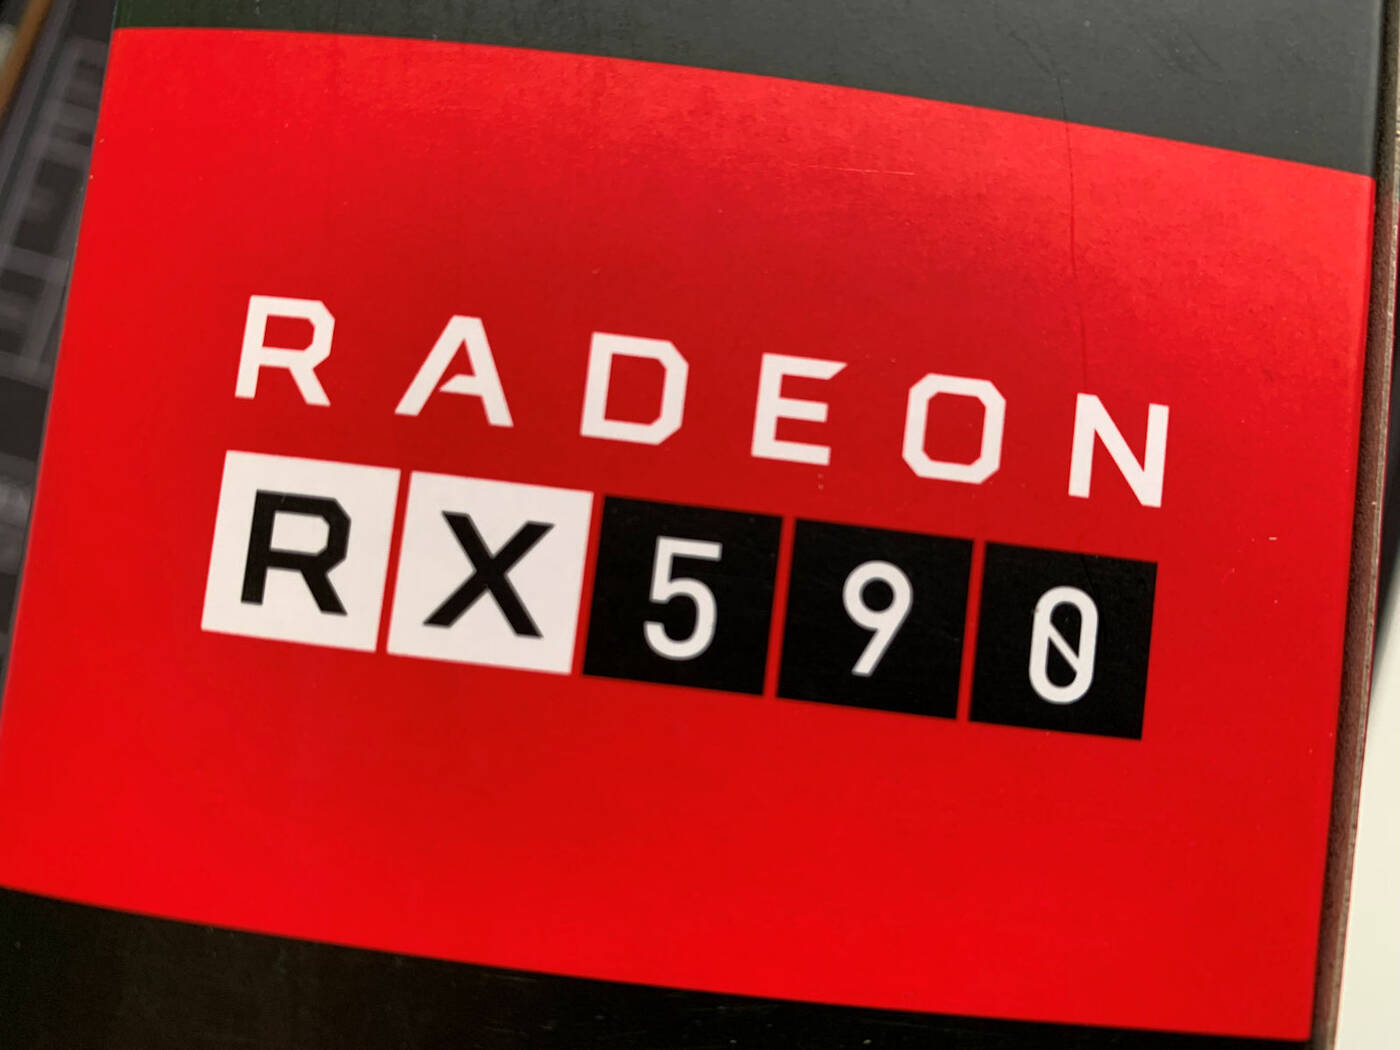 AMD Radeon RX 590 na 12nm procesie FinFET